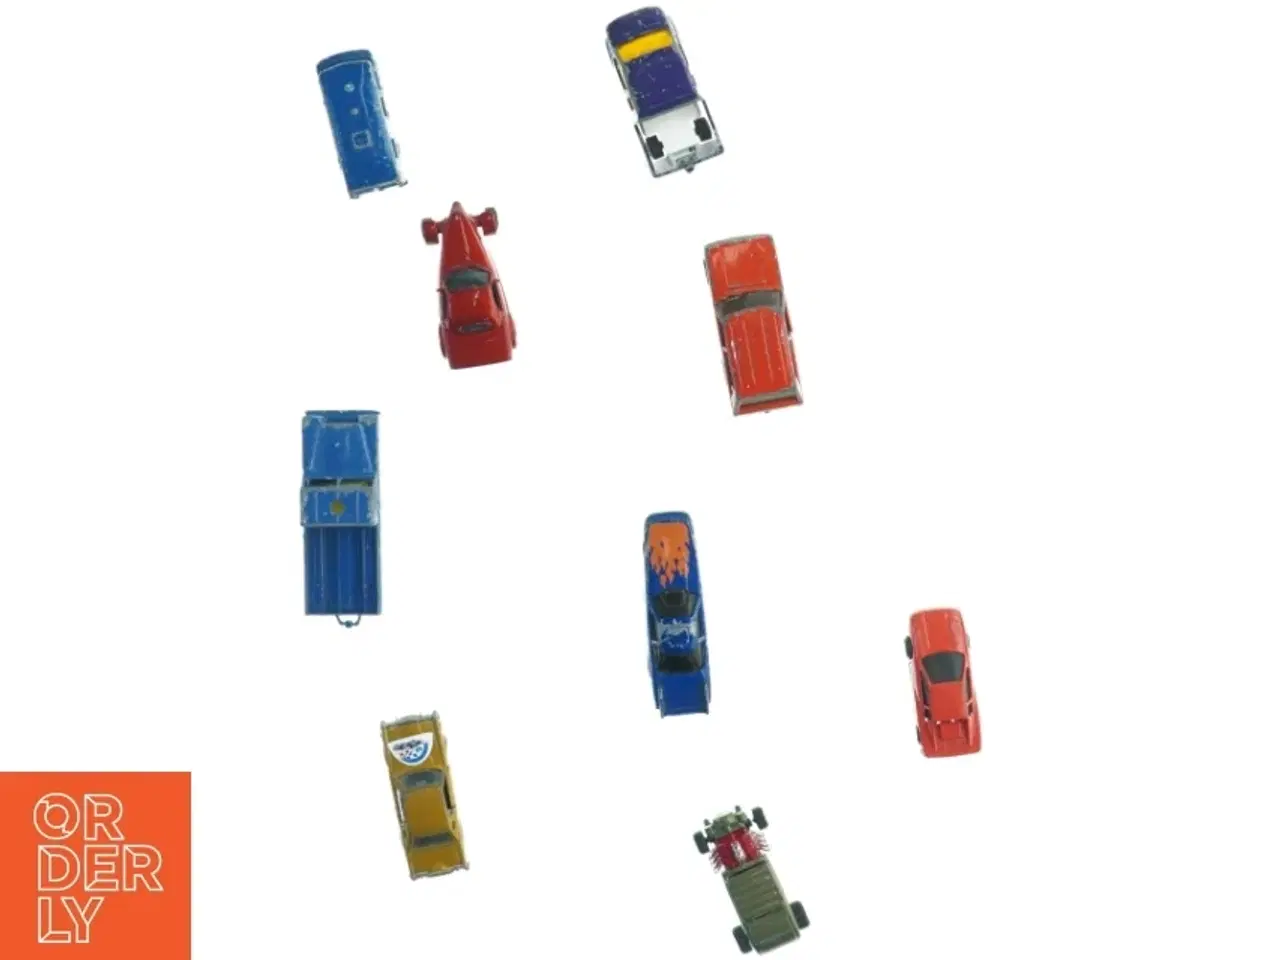 Billede 3 - Samling af Matchbox biler fra Matchbox (str. 10 x 3 cm)